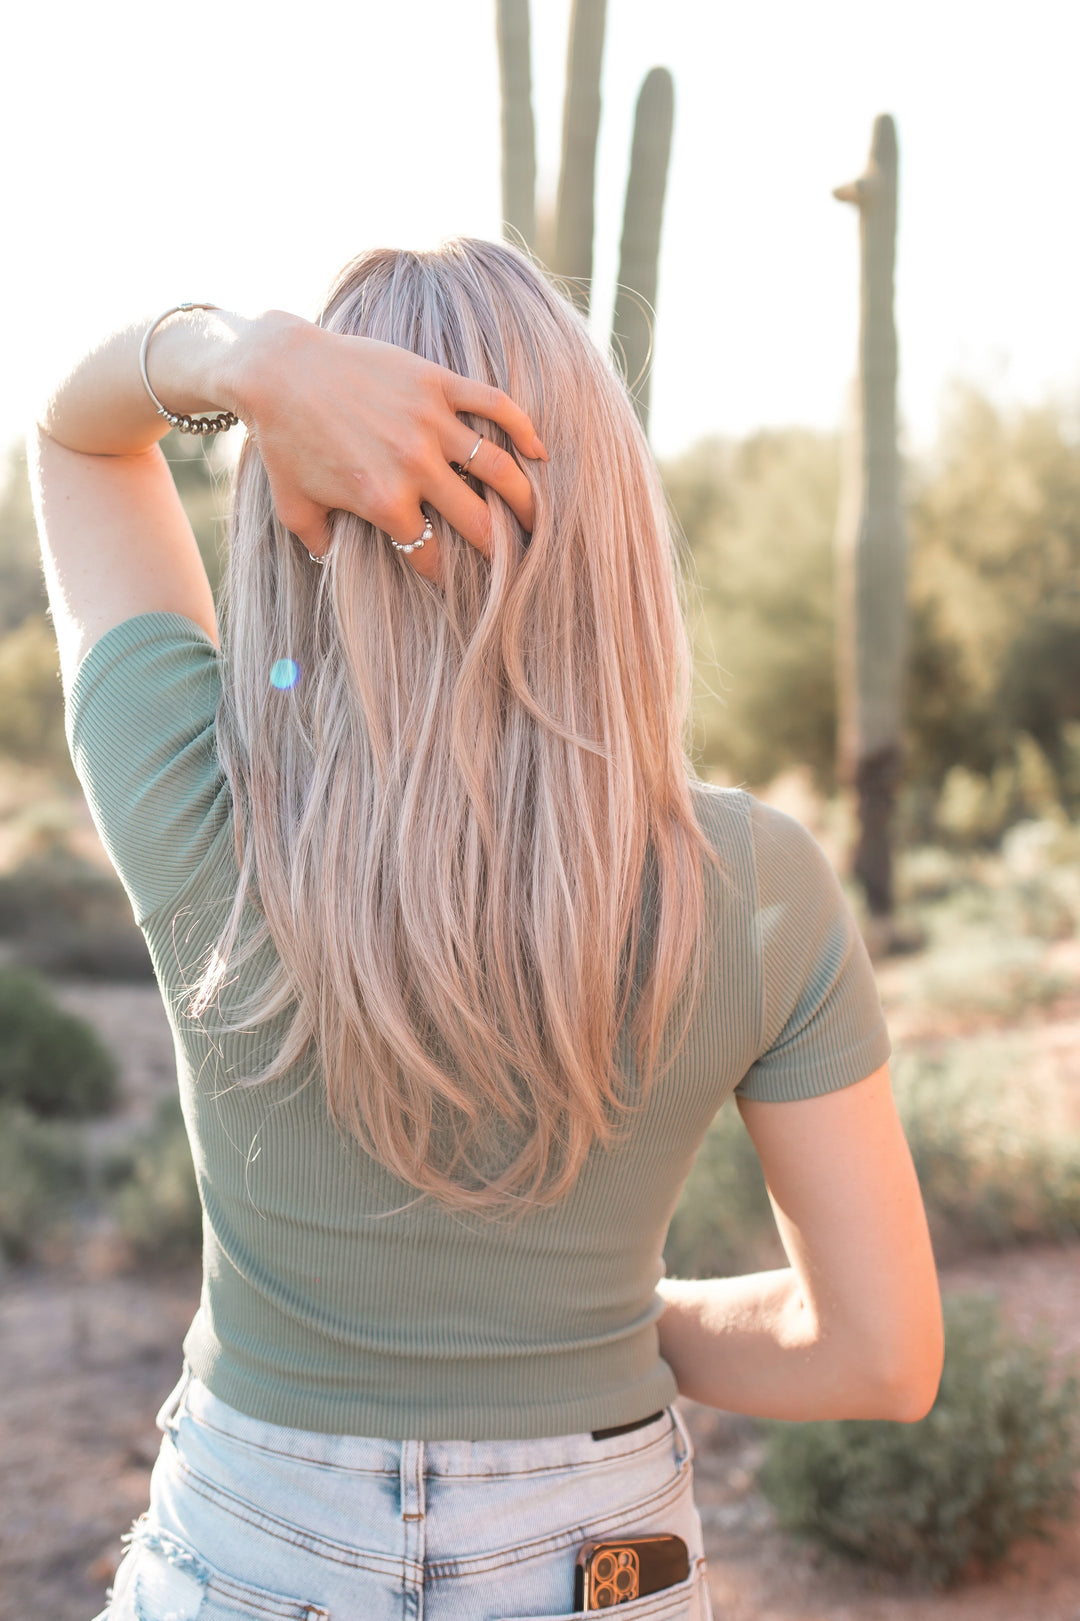 The Kristyn Luxury Wig-Beauty-Krush Kandy, Women's Online Fashion Boutique Located in Phoenix, Arizona (Scottsdale Area)